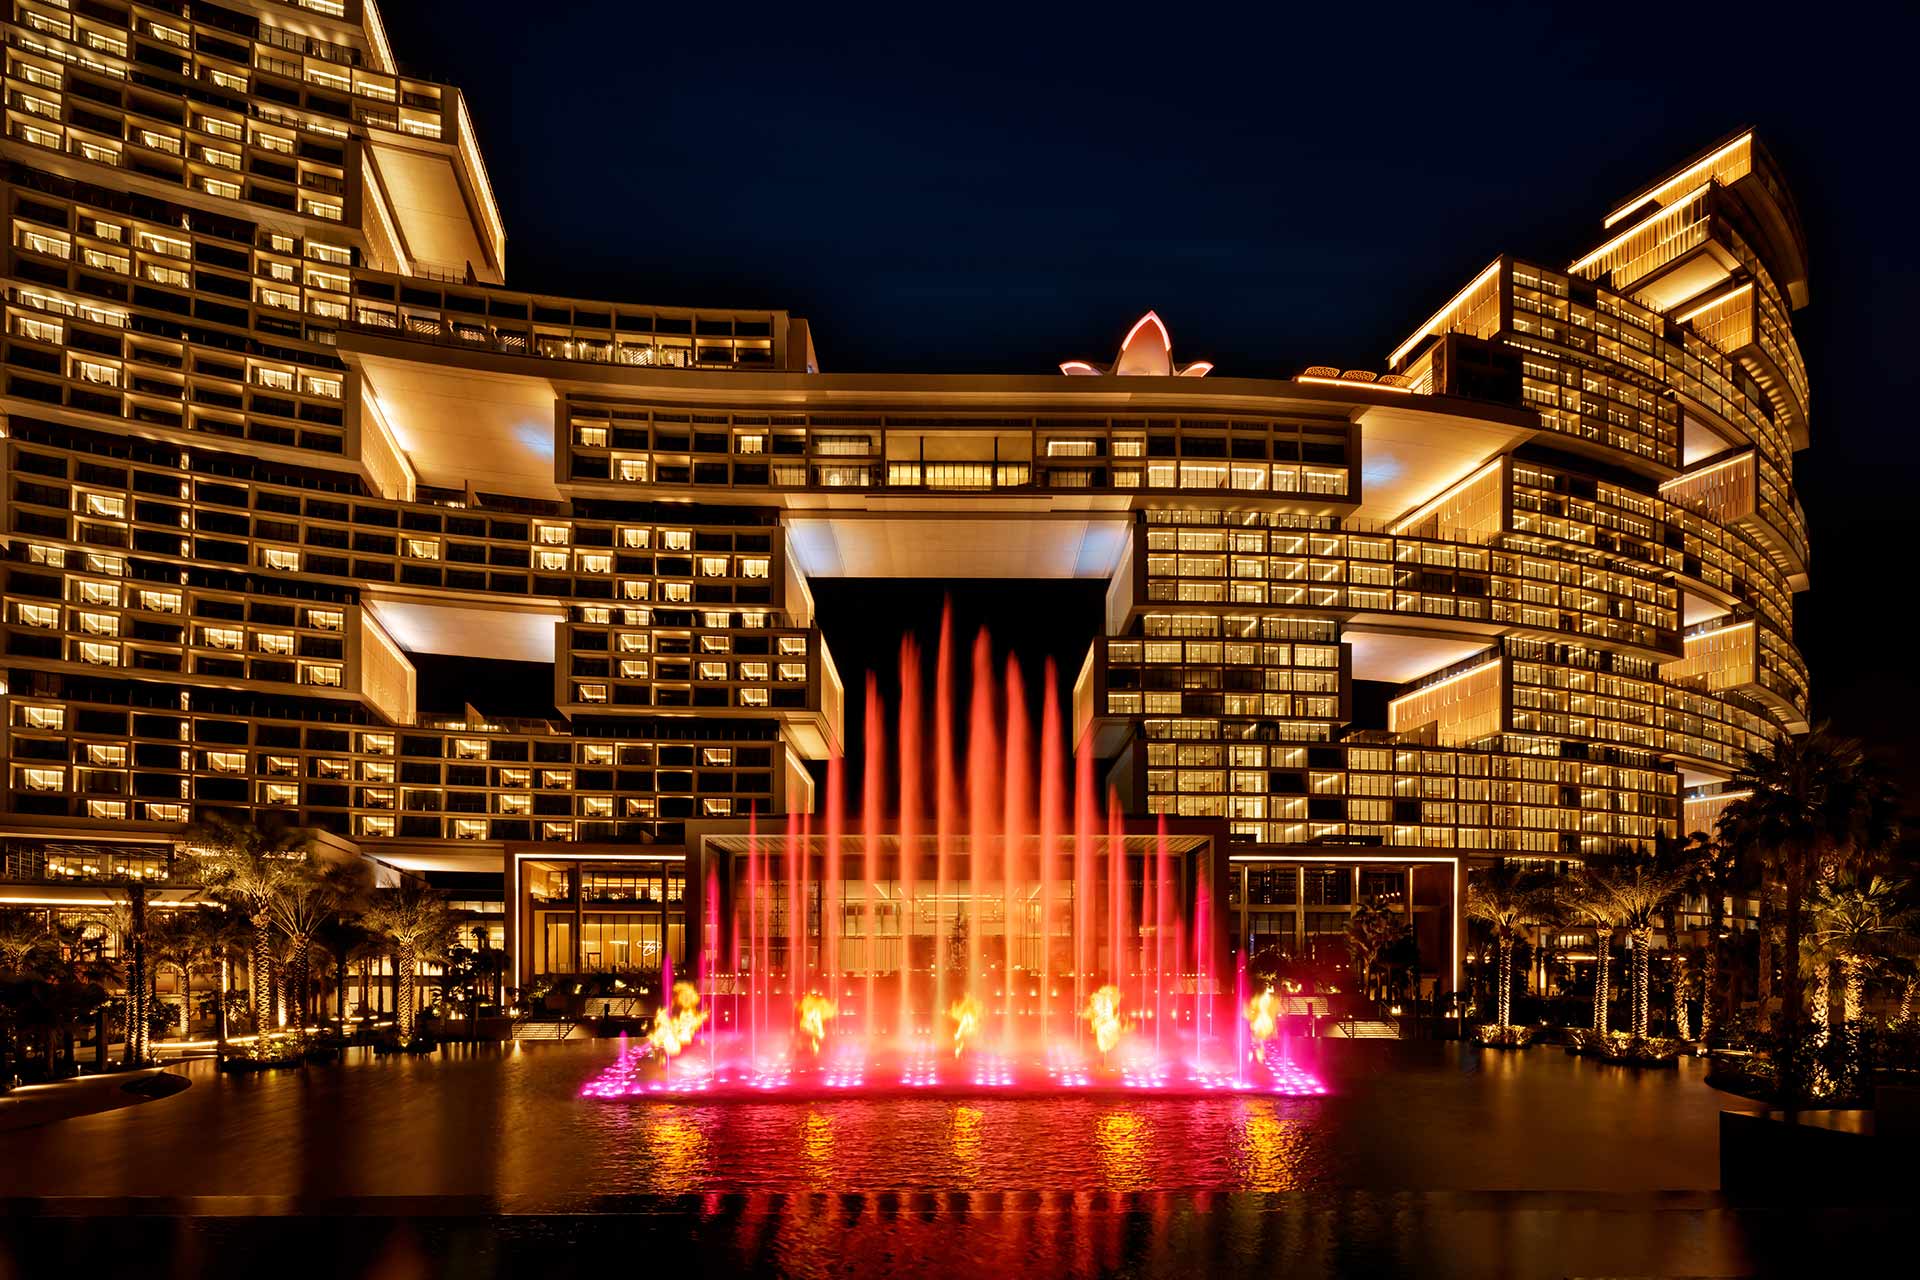 Das Foto zeigt das Atlantis The Royal Hotel in Dubai bei Nacht, mit beleuchteten Fassaden und der Skyblaze Fountain im Vordergrund.